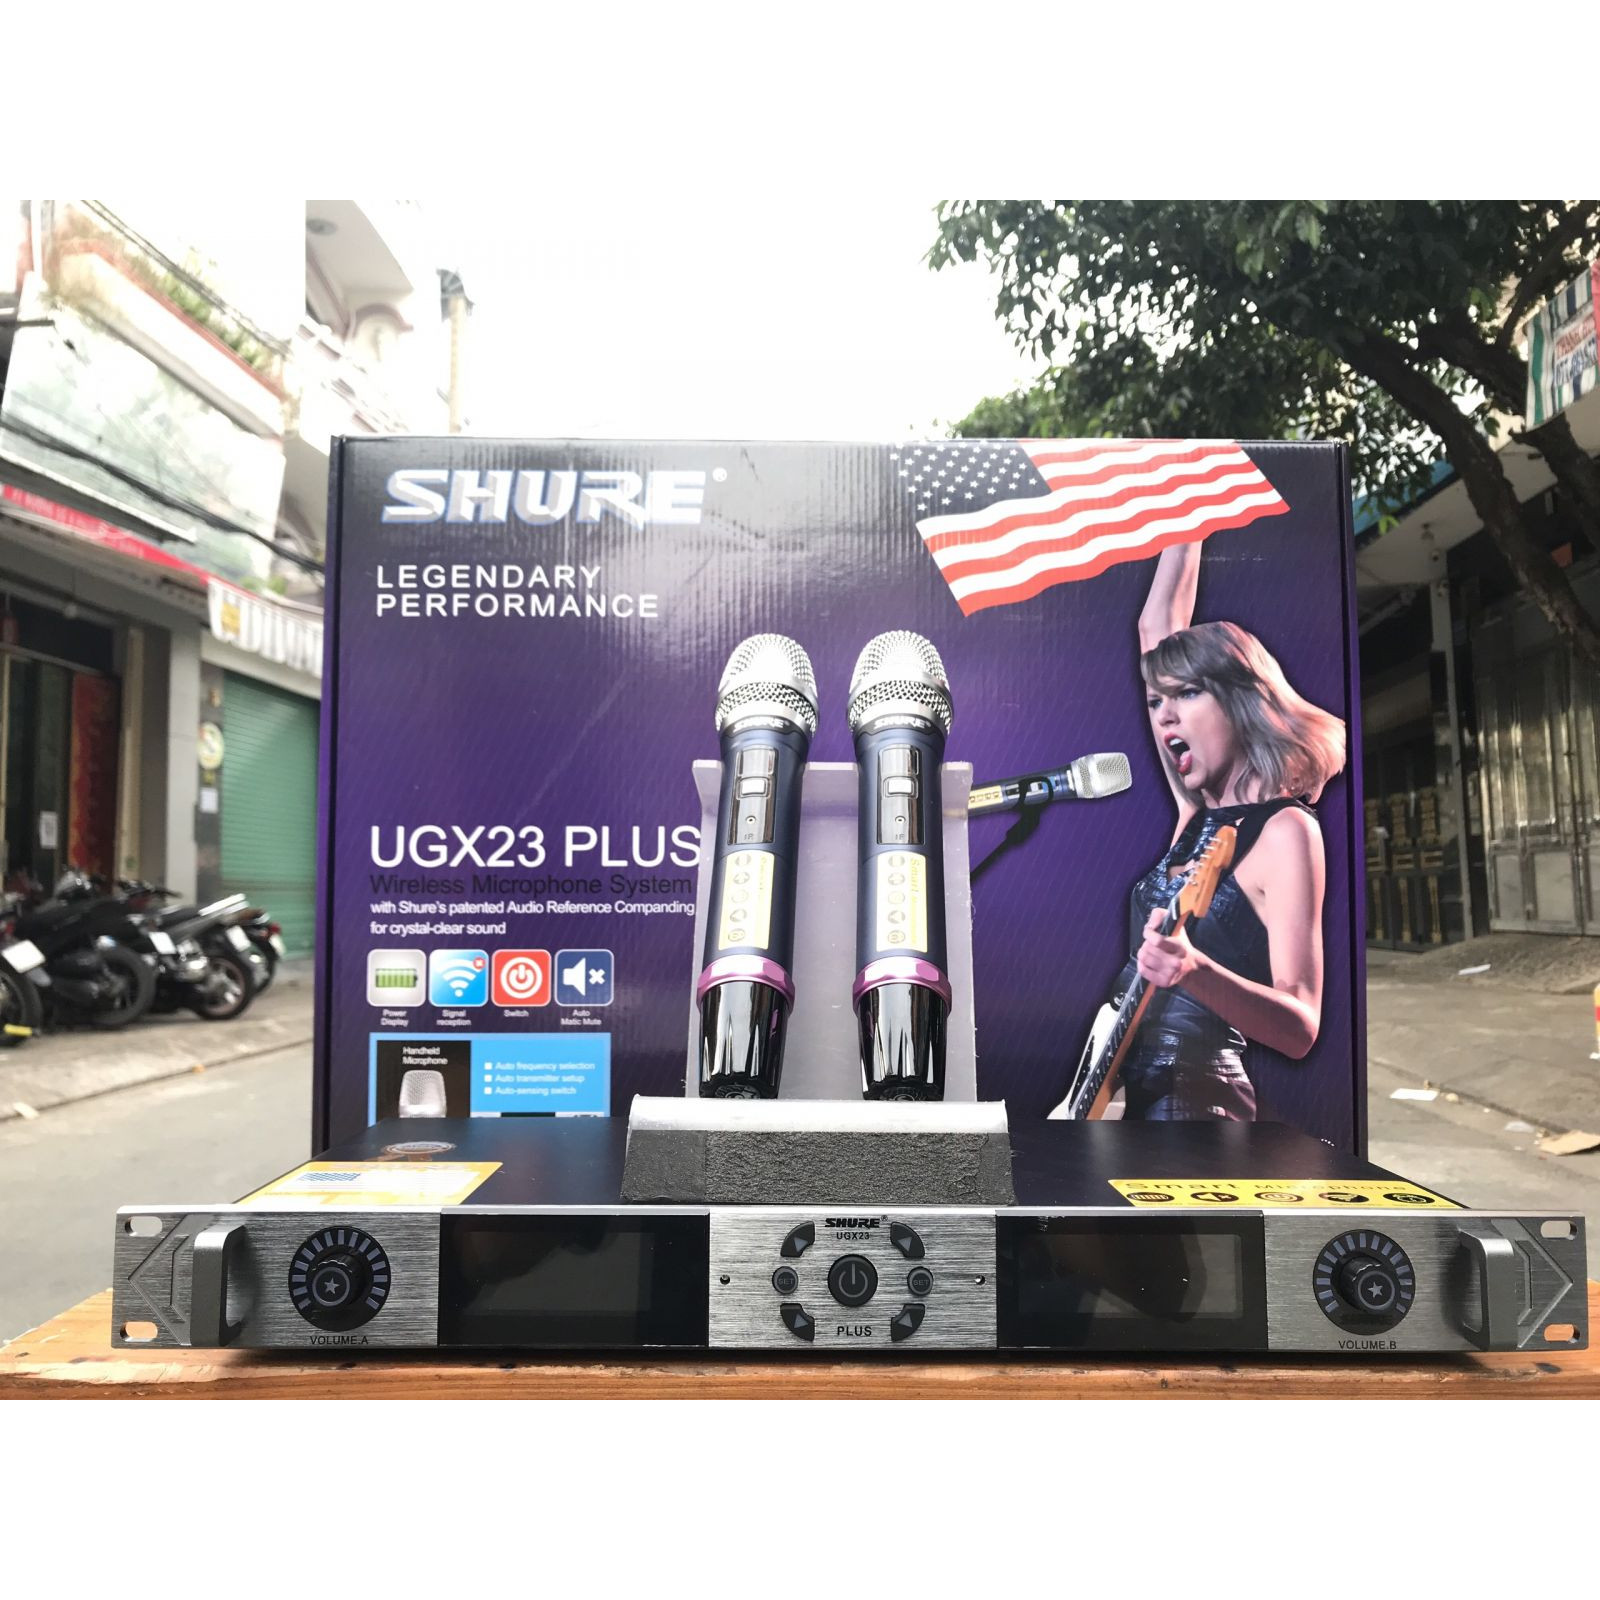 Micro Shure UGX23 Plus 4 râu vỉ tím, thu sóng siêu khỏe, hát siêu nhẹ, tự ngắt  - Hàng nhập khẩu